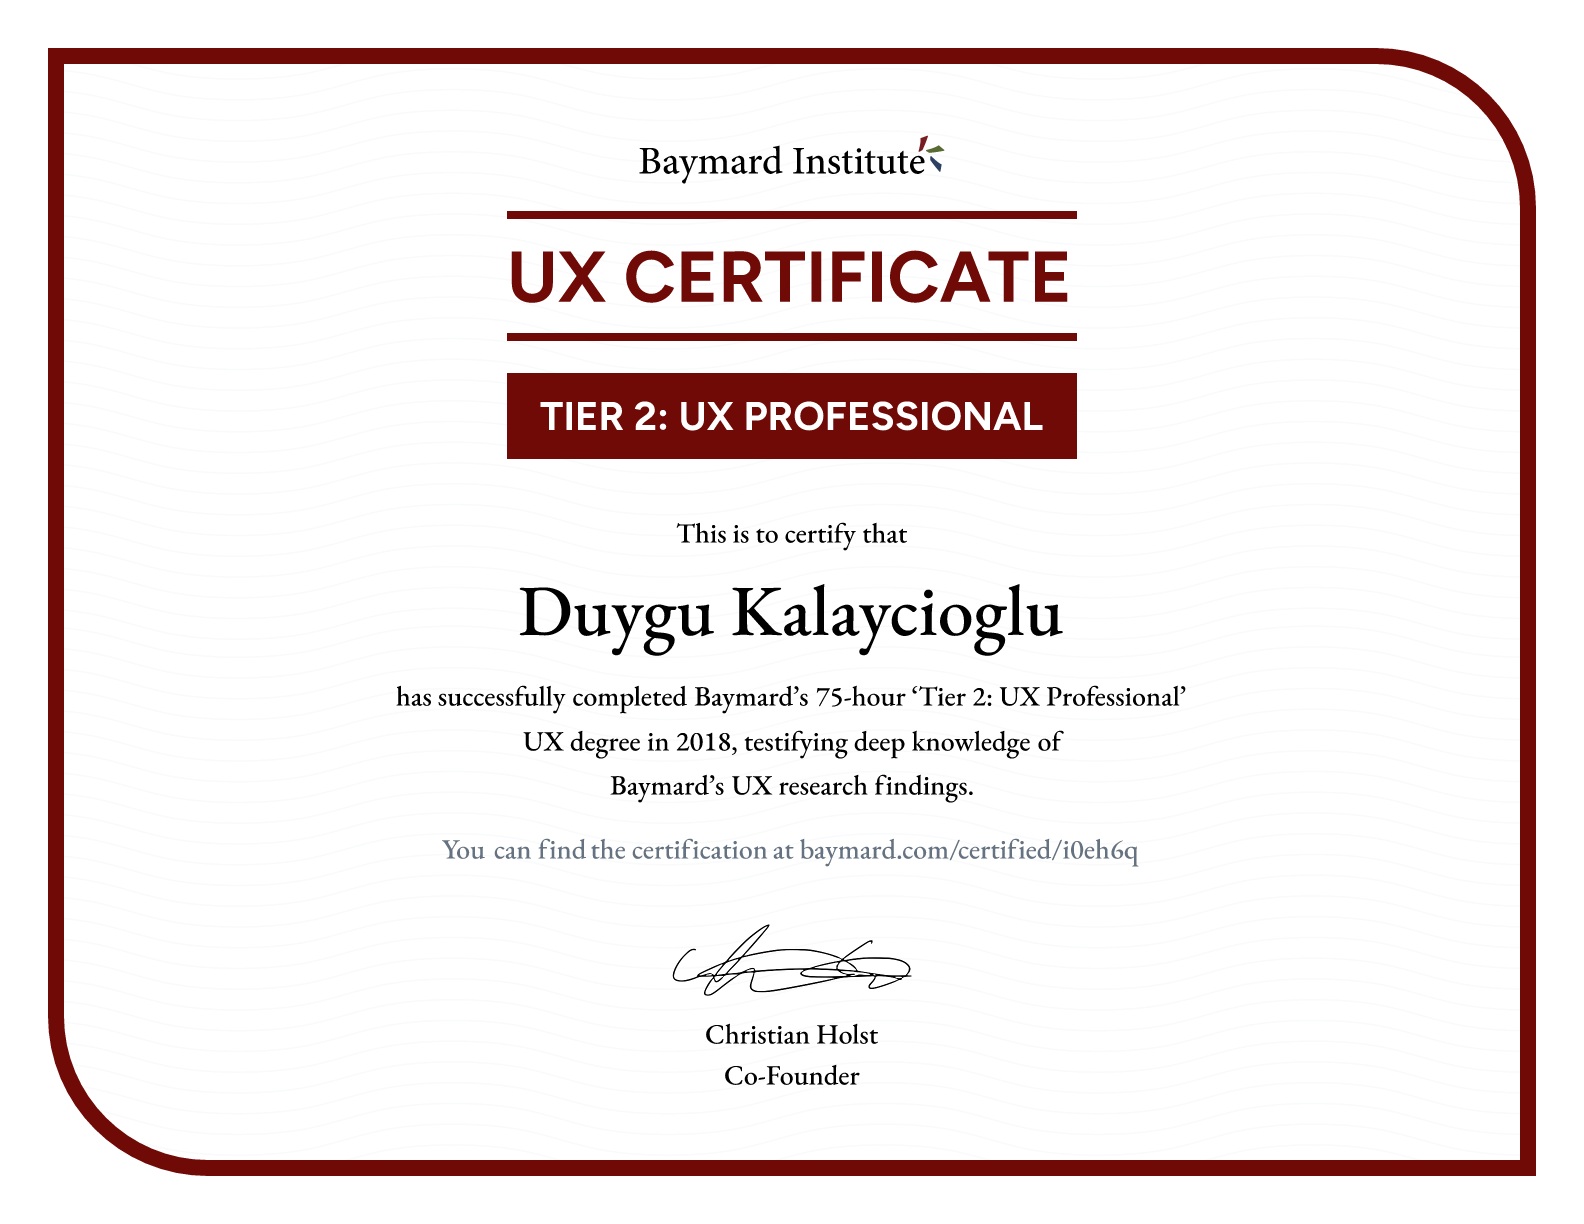 Duygu Kalaycioglu’s certificate